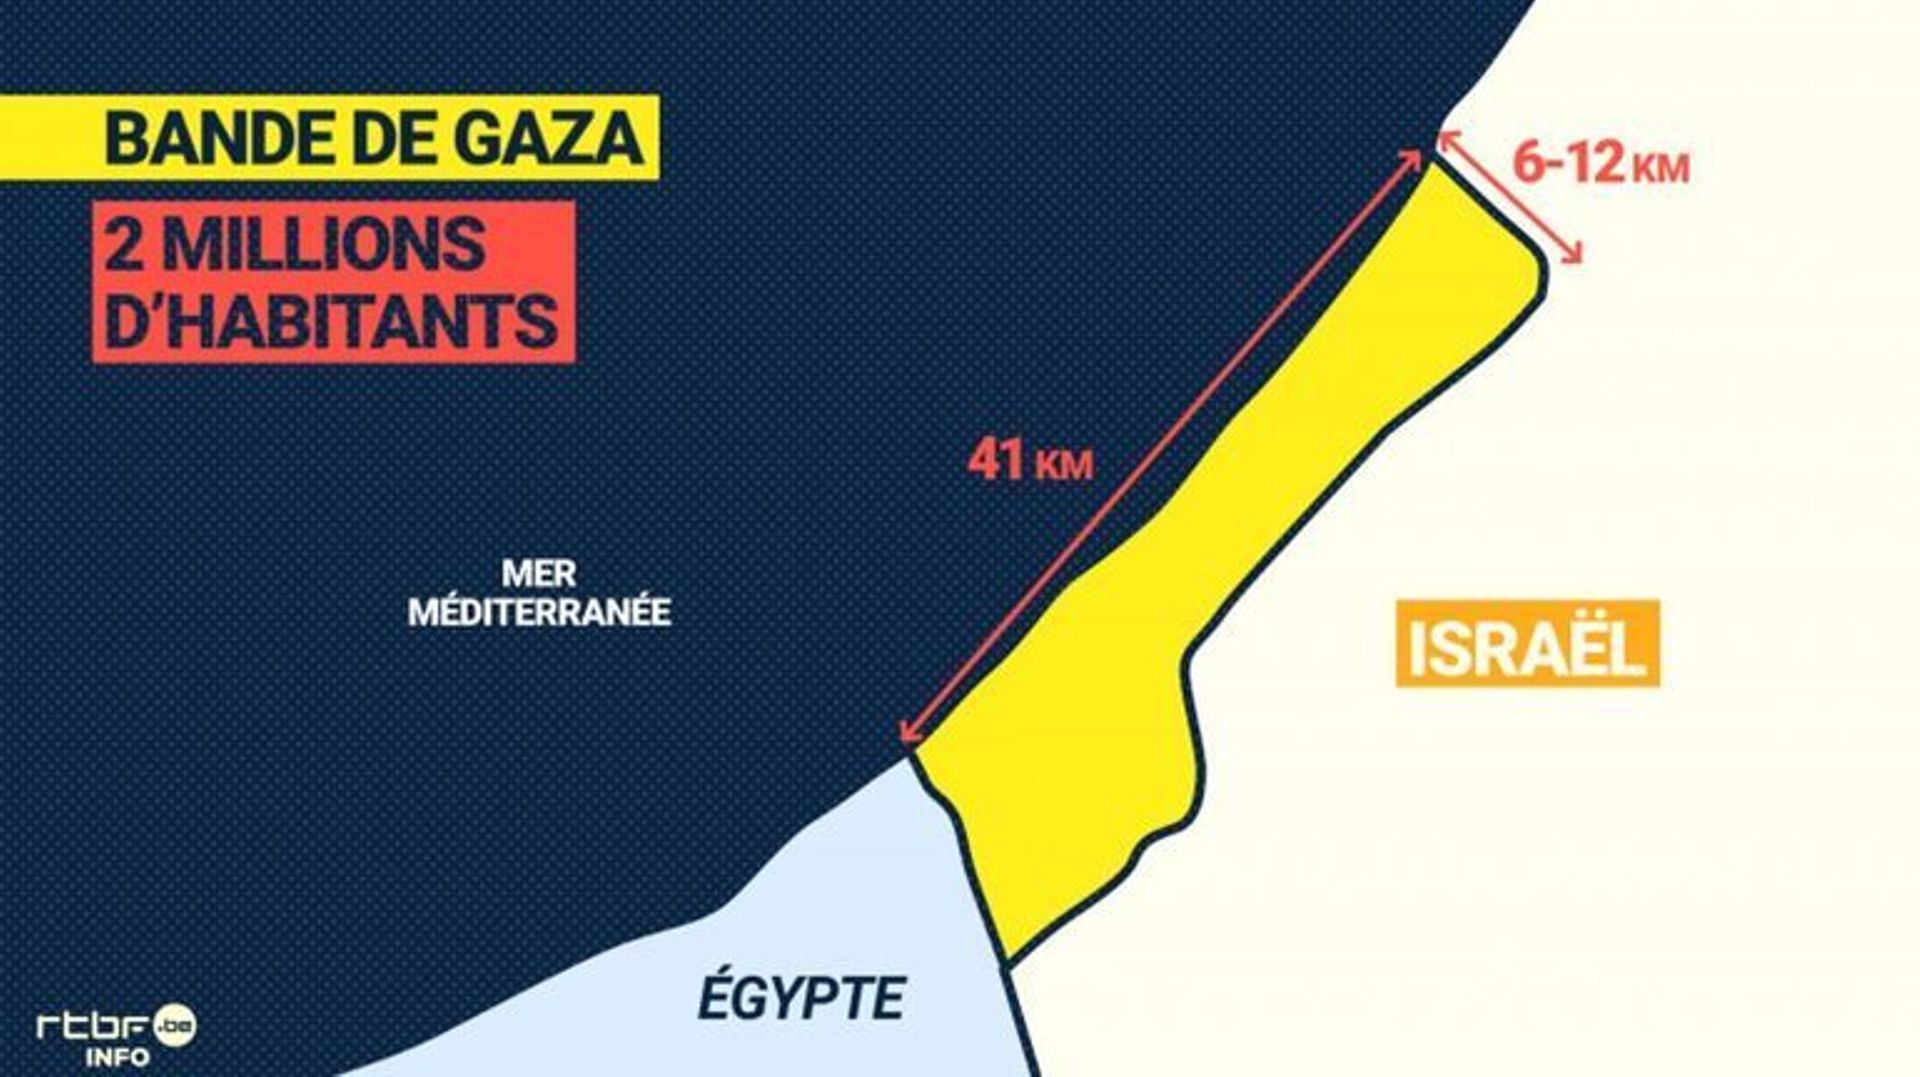 2,3 millions de personnes vivent dans la bande de Gaza, soit près de 6000 habitants au km².